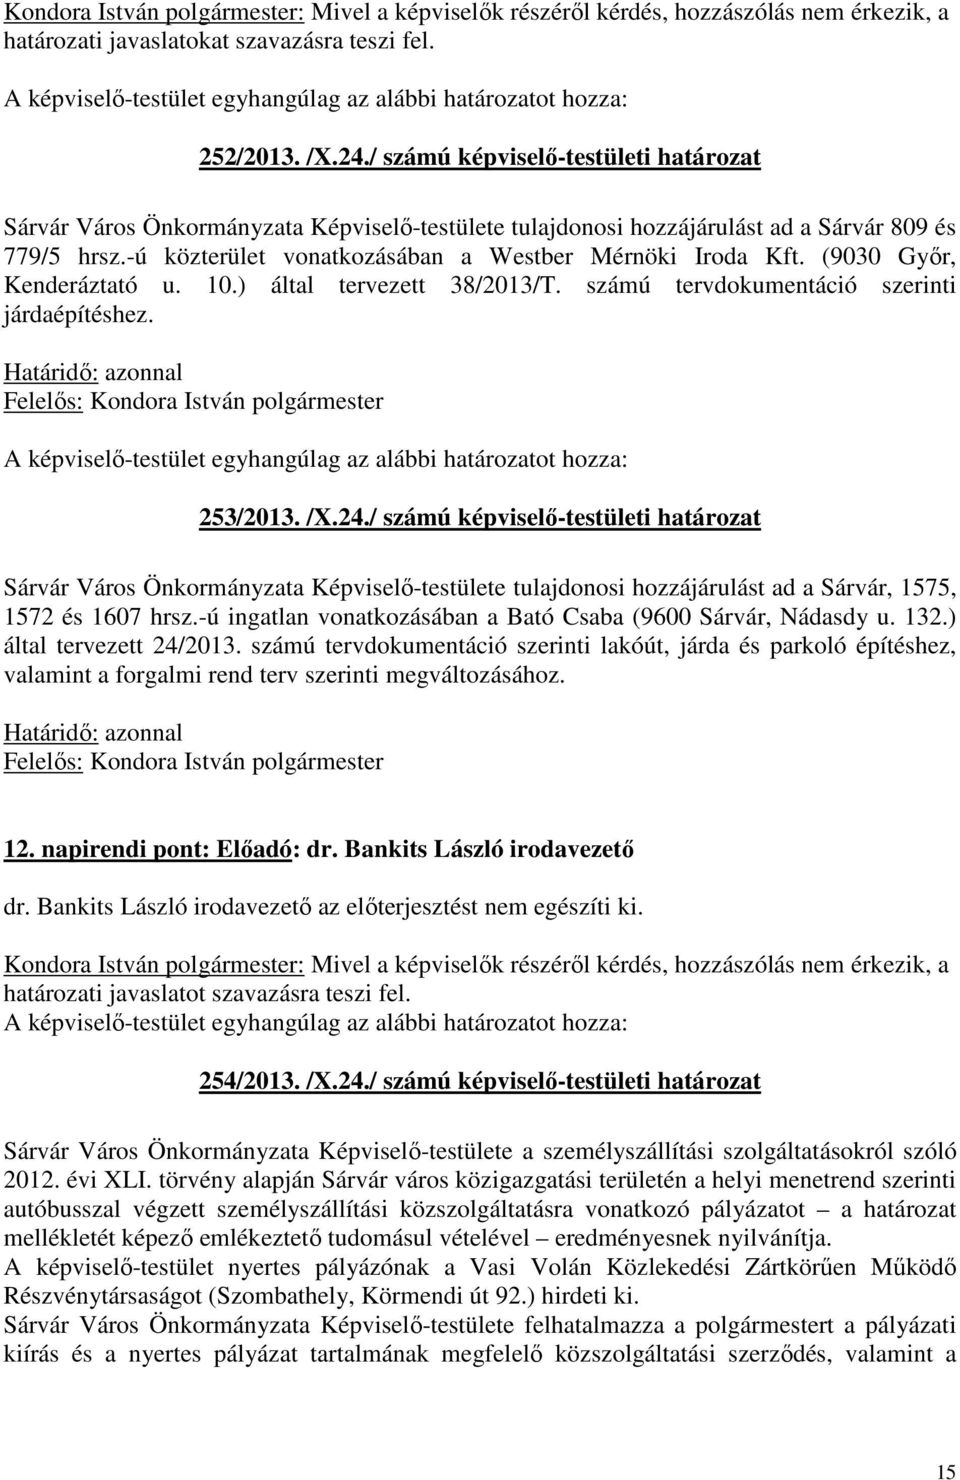 (9030 Győr, Kenderáztató u. 10.) által tervezett 38/2013/T. számú tervdokumentáció szerinti járdaépítéshez. Határidő: azonnal 253/2013. /X.24.